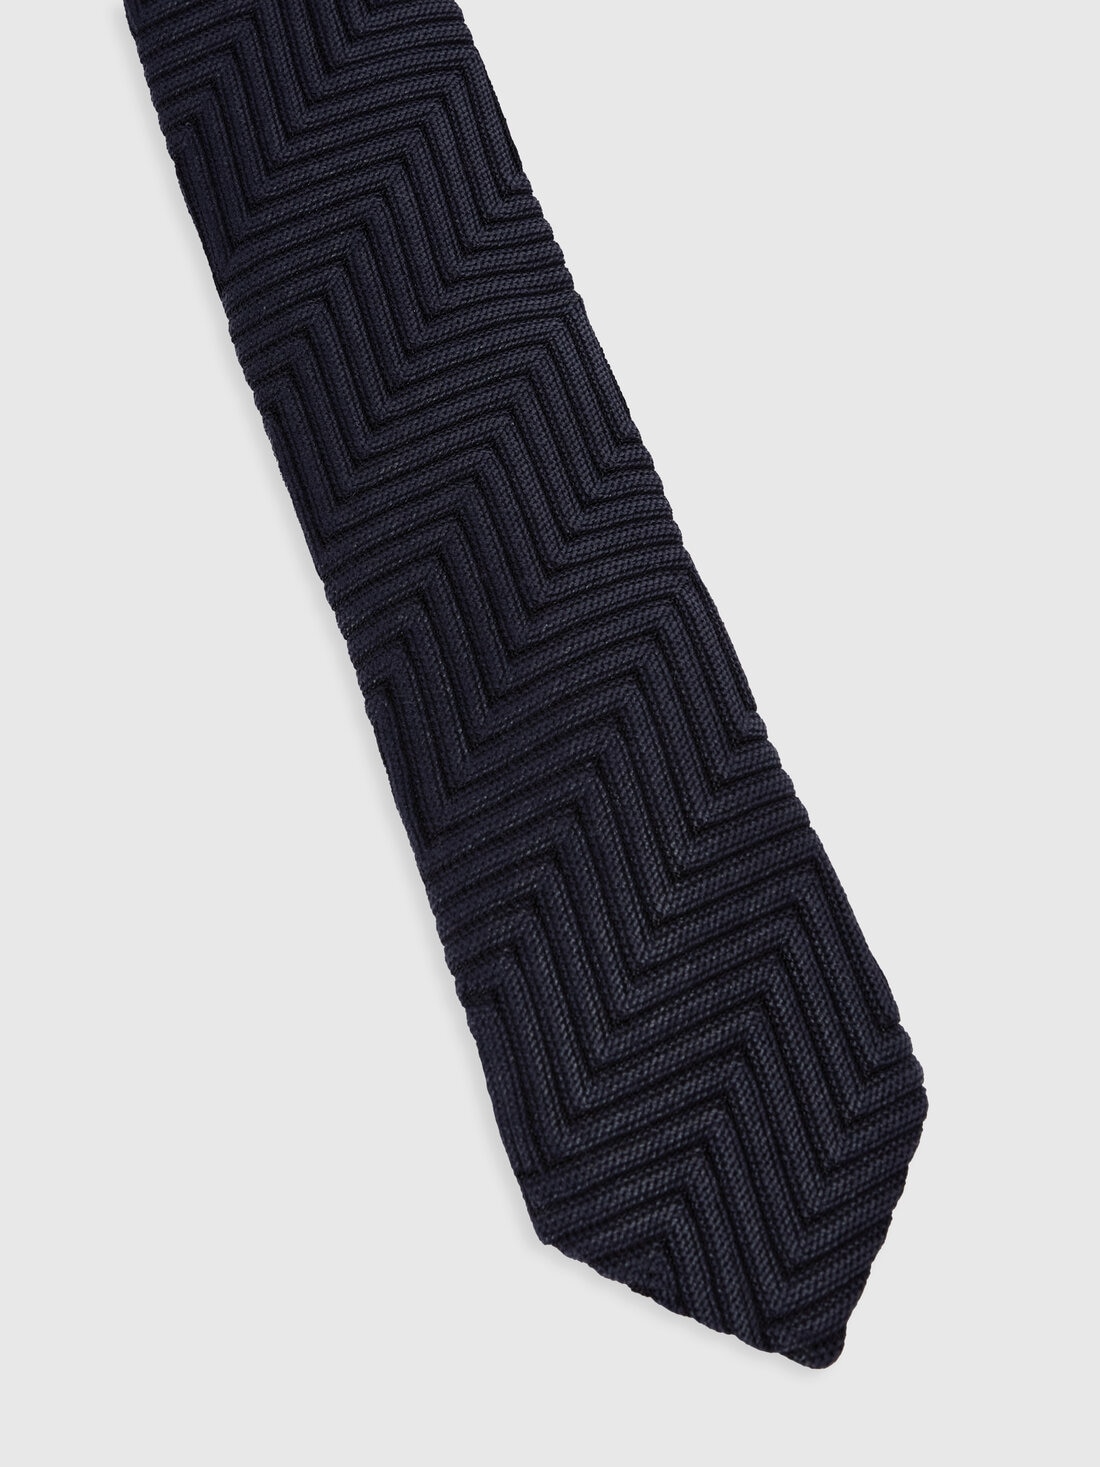 Corbata de algodón y viscosa con motivo de espigas, Multicolor  - 8053147141824 - 1